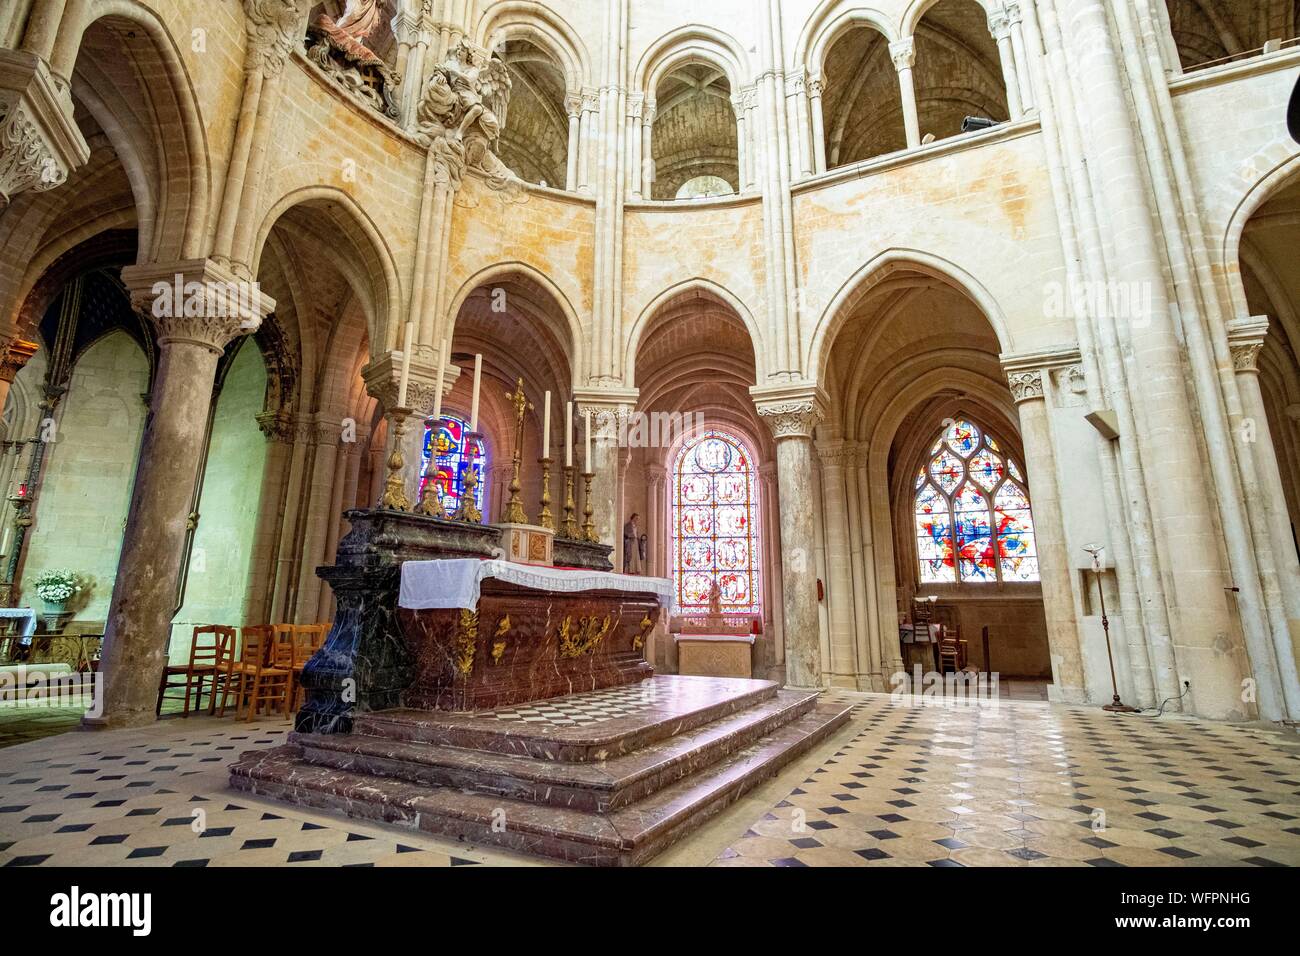 France, Oise, Senlis, la cathédrale Notre-Dame de Senlis, catholique romaine d'architecture gothique Banque D'Images